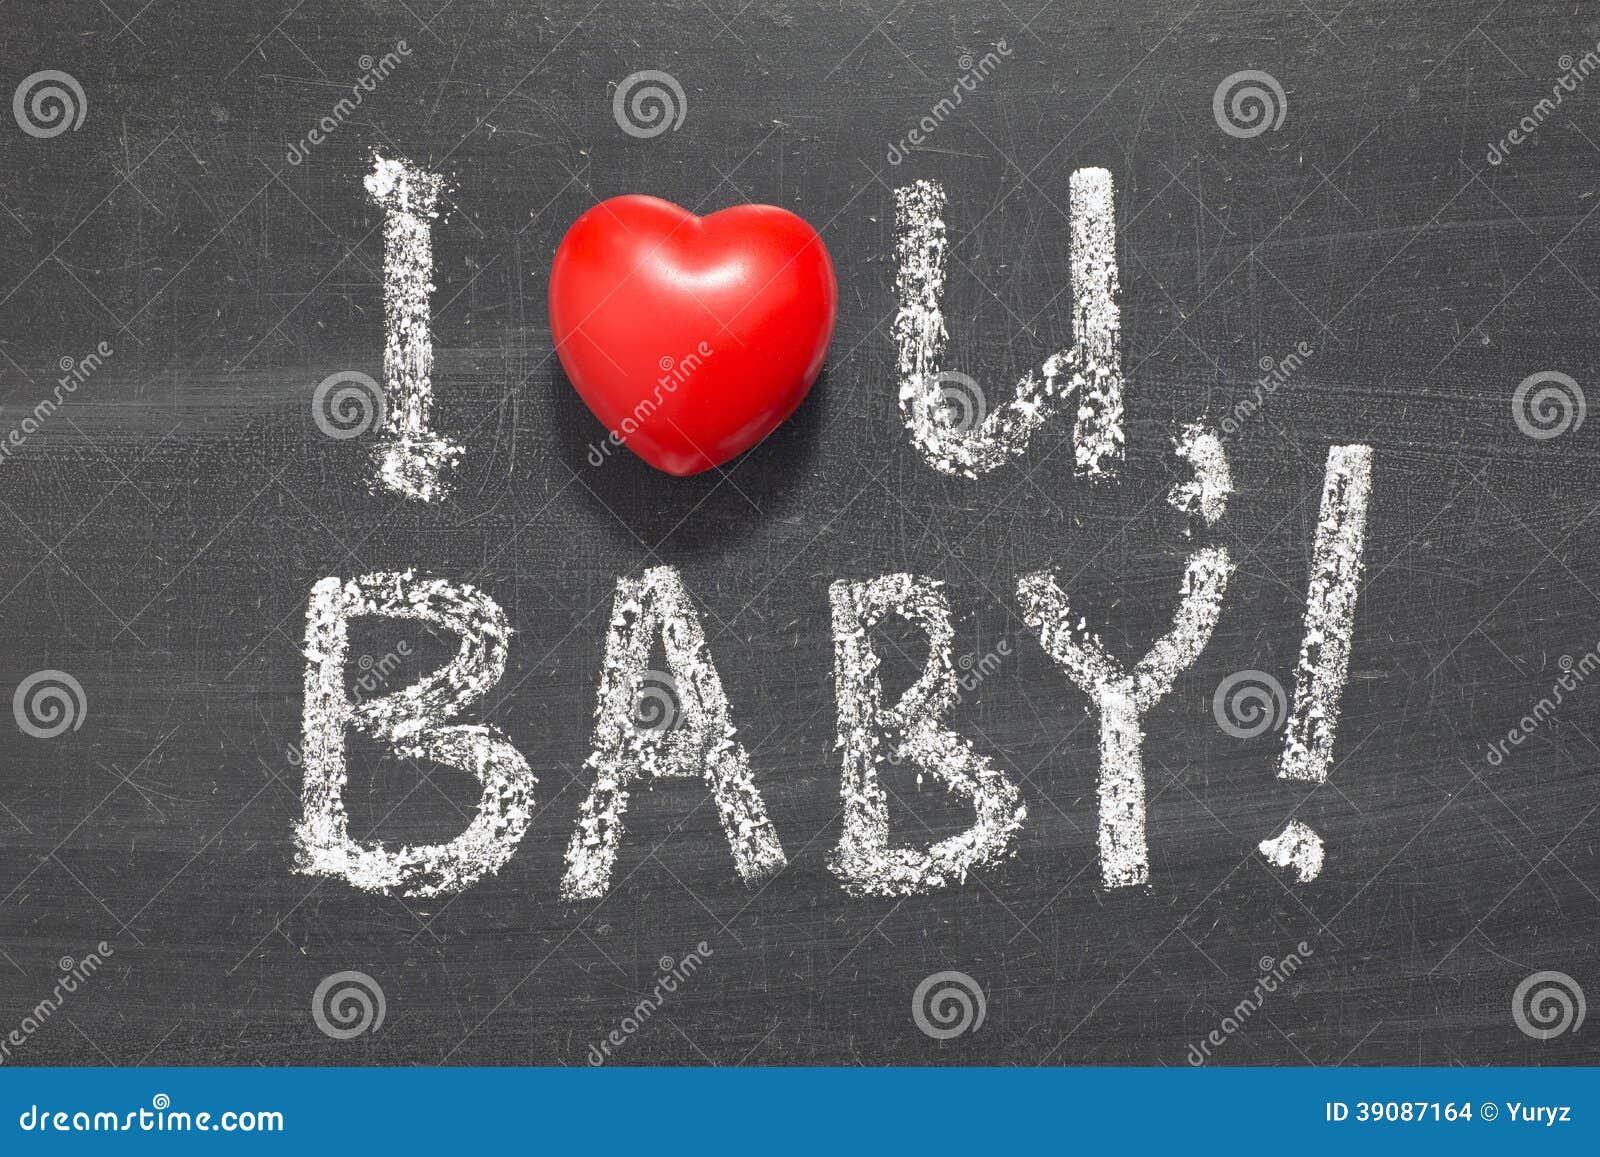 Ай лов ю Беби. I Love you Baby картинки. I Love you Baby рисунок. Надписи i Love you Бэйби. Ай ай лов беби